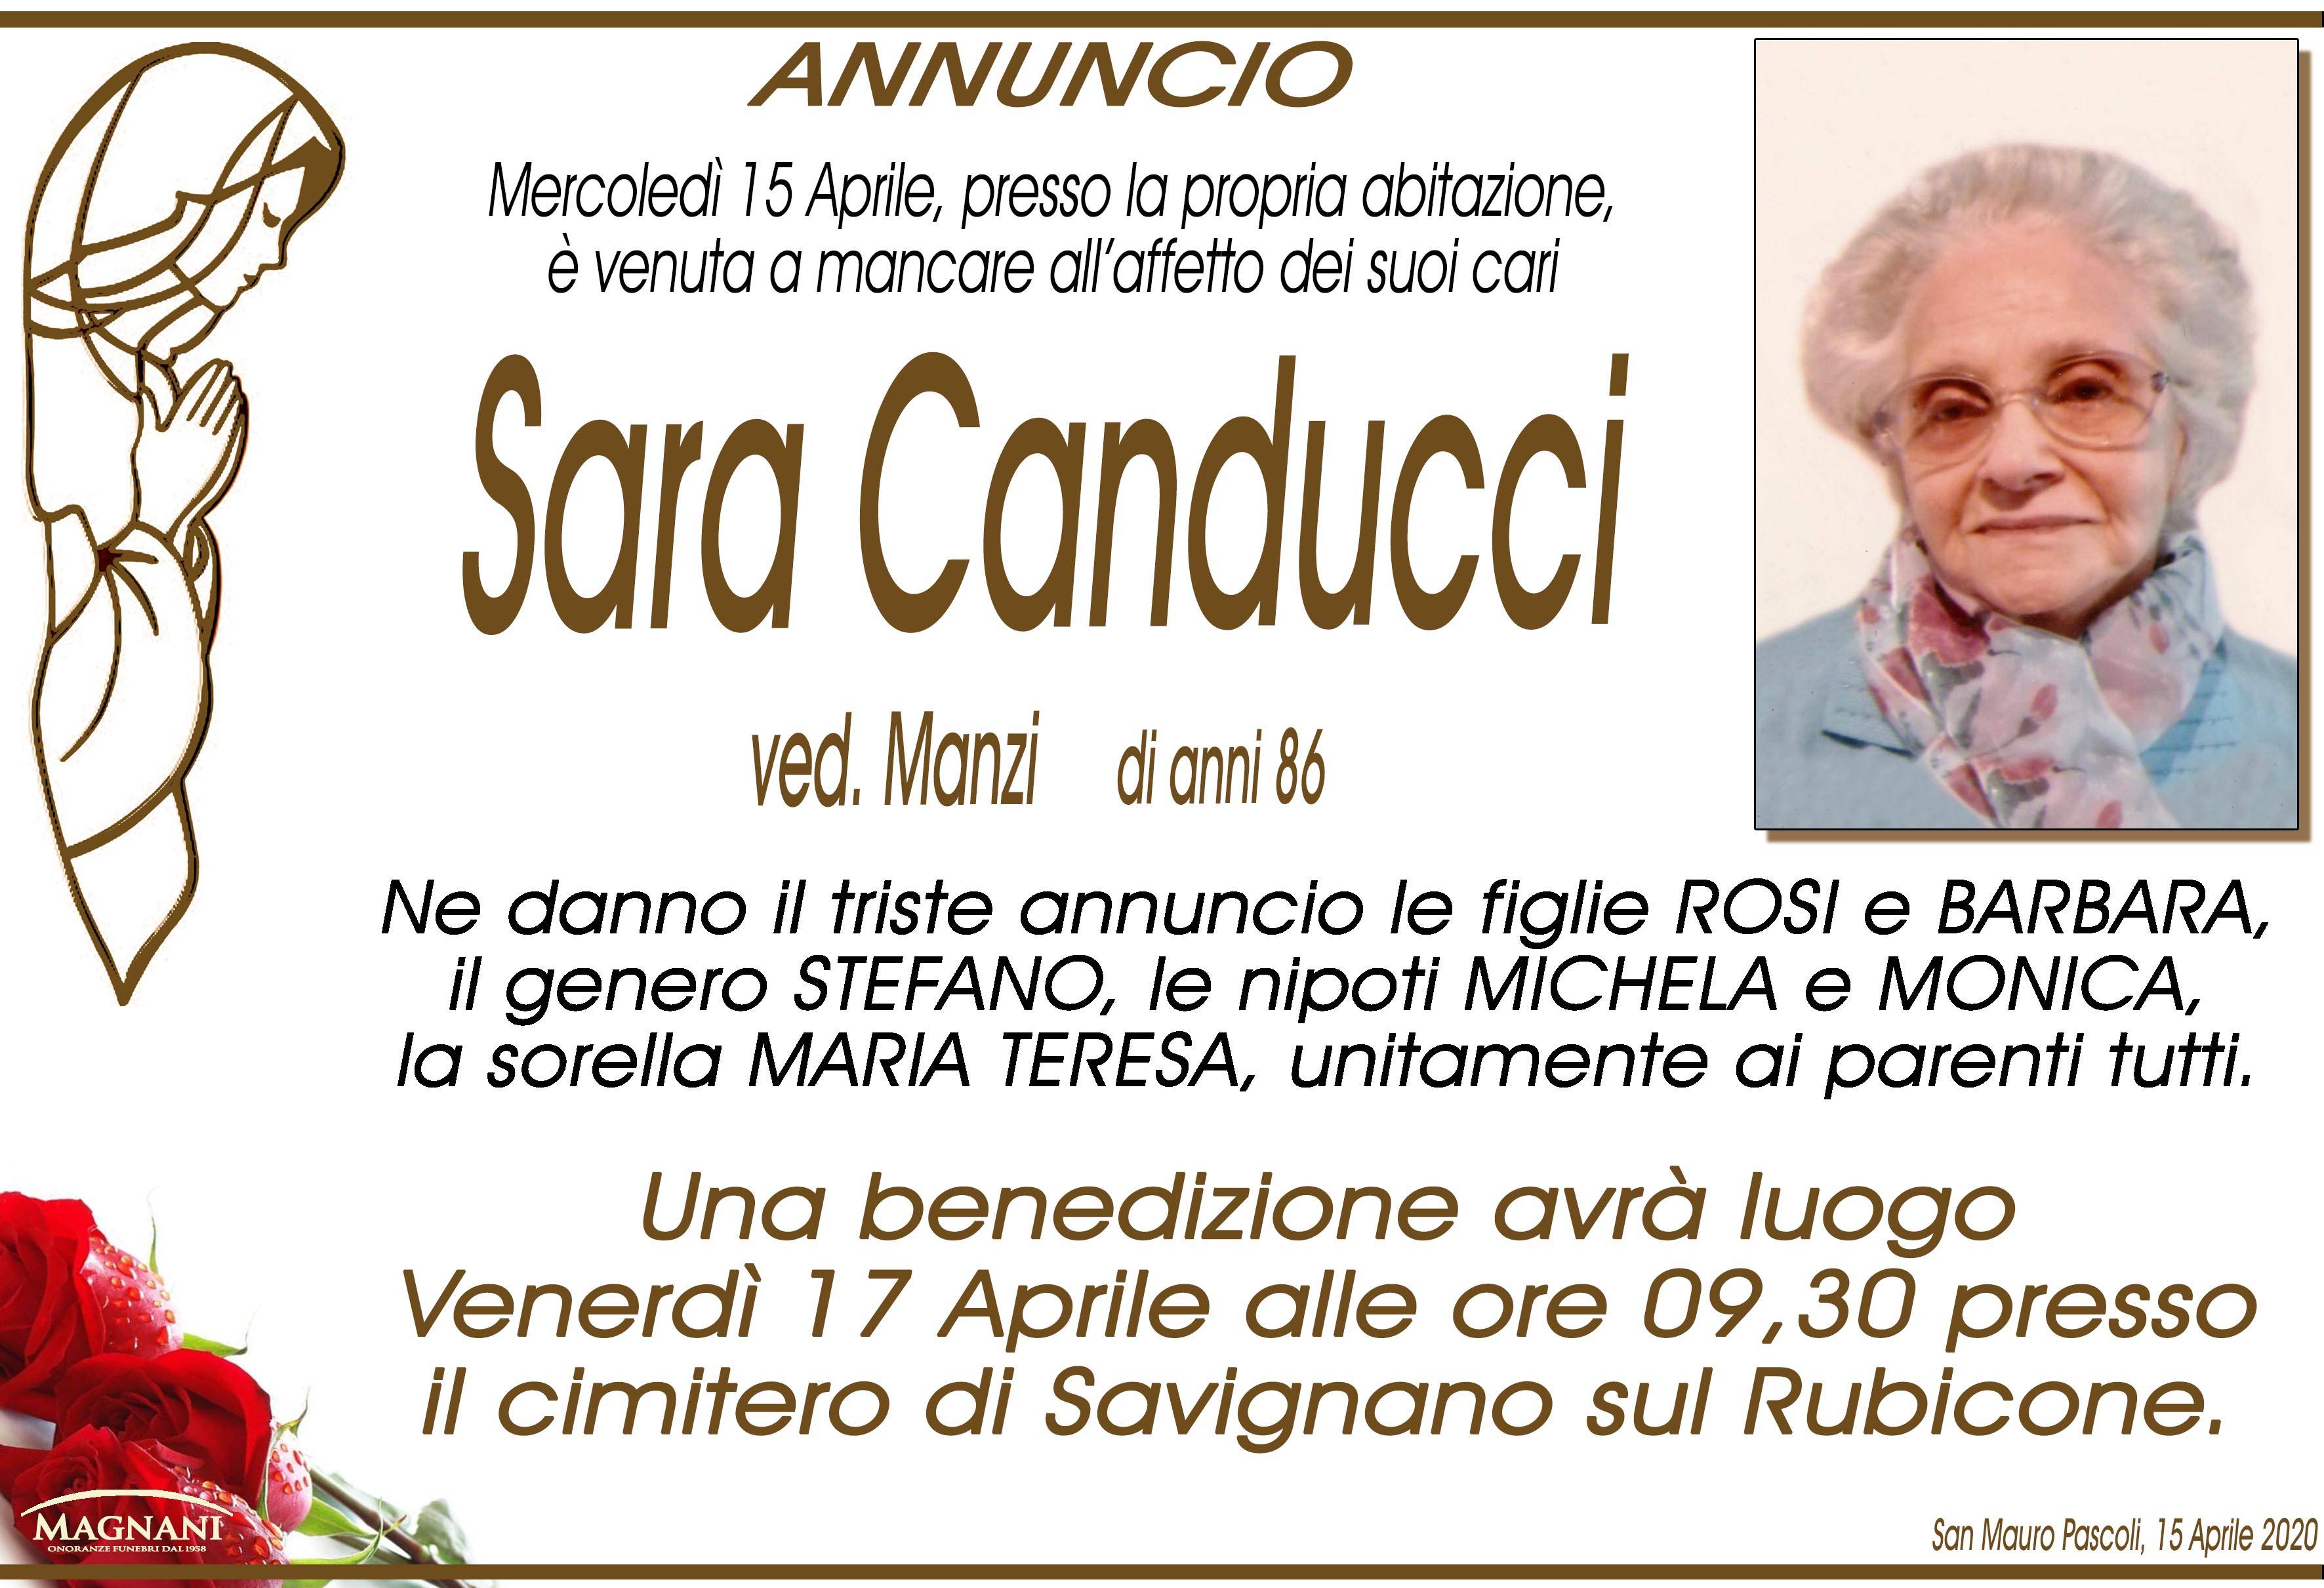 Sara Canducci